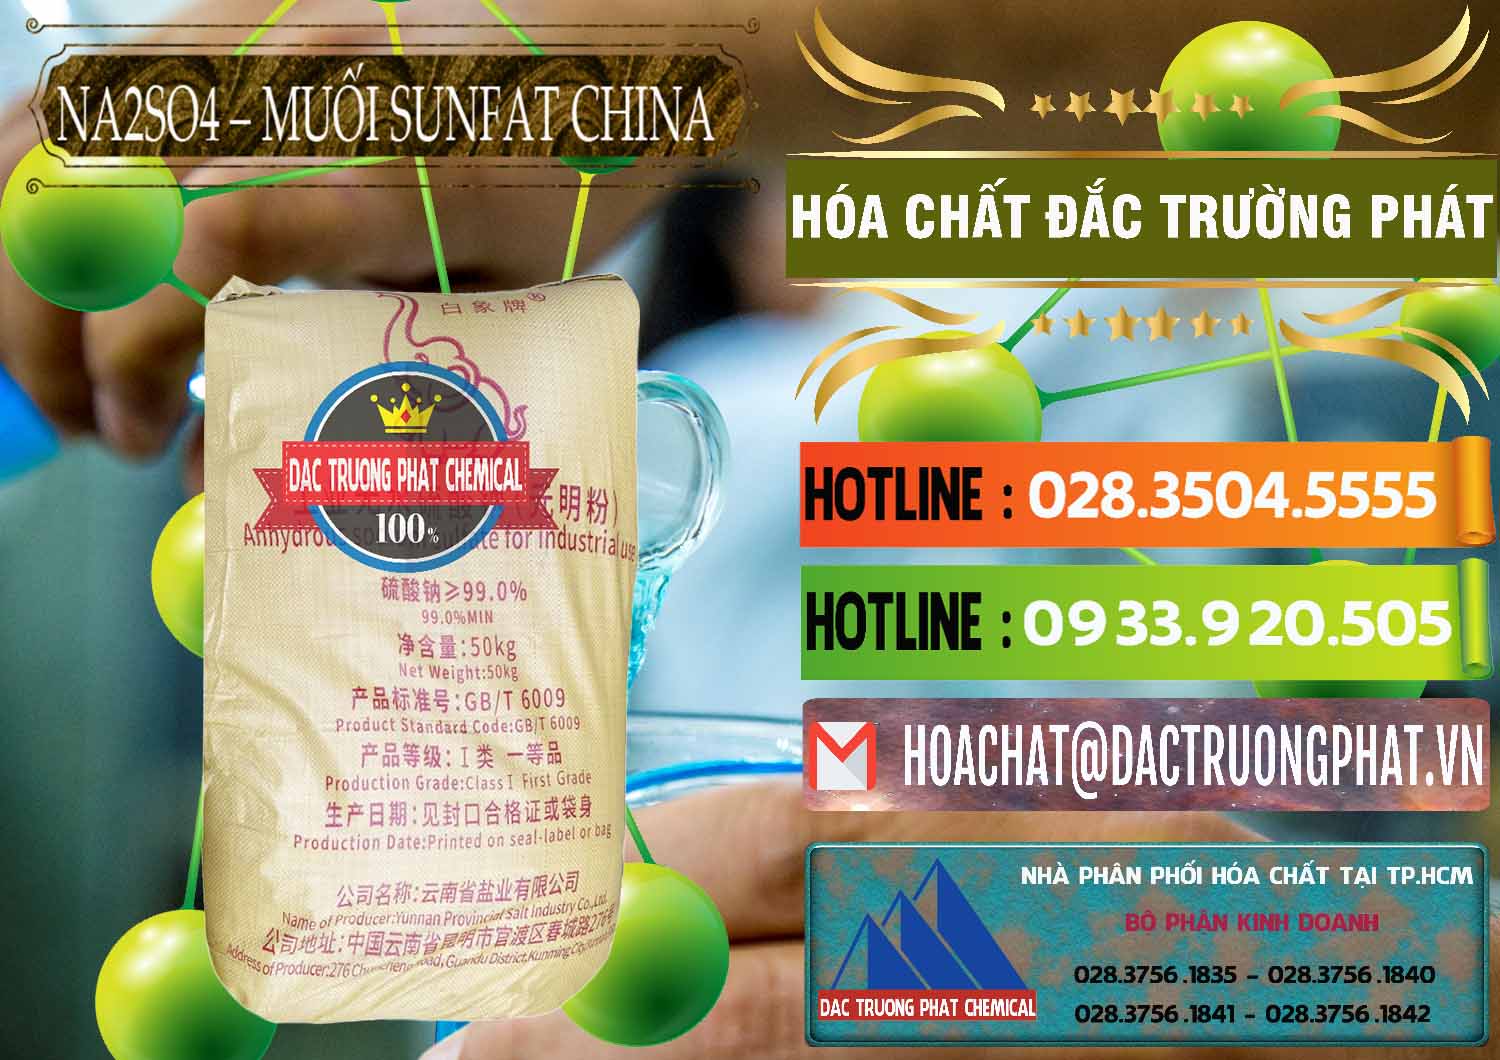 Công ty chuyên phân phối & bán Sodium Sulphate - Muối Sunfat Na2SO4 Logo Con Voi Trung Quốc China - 0409 - Phân phối - nhập khẩu hóa chất tại TP.HCM - cungcaphoachat.com.vn